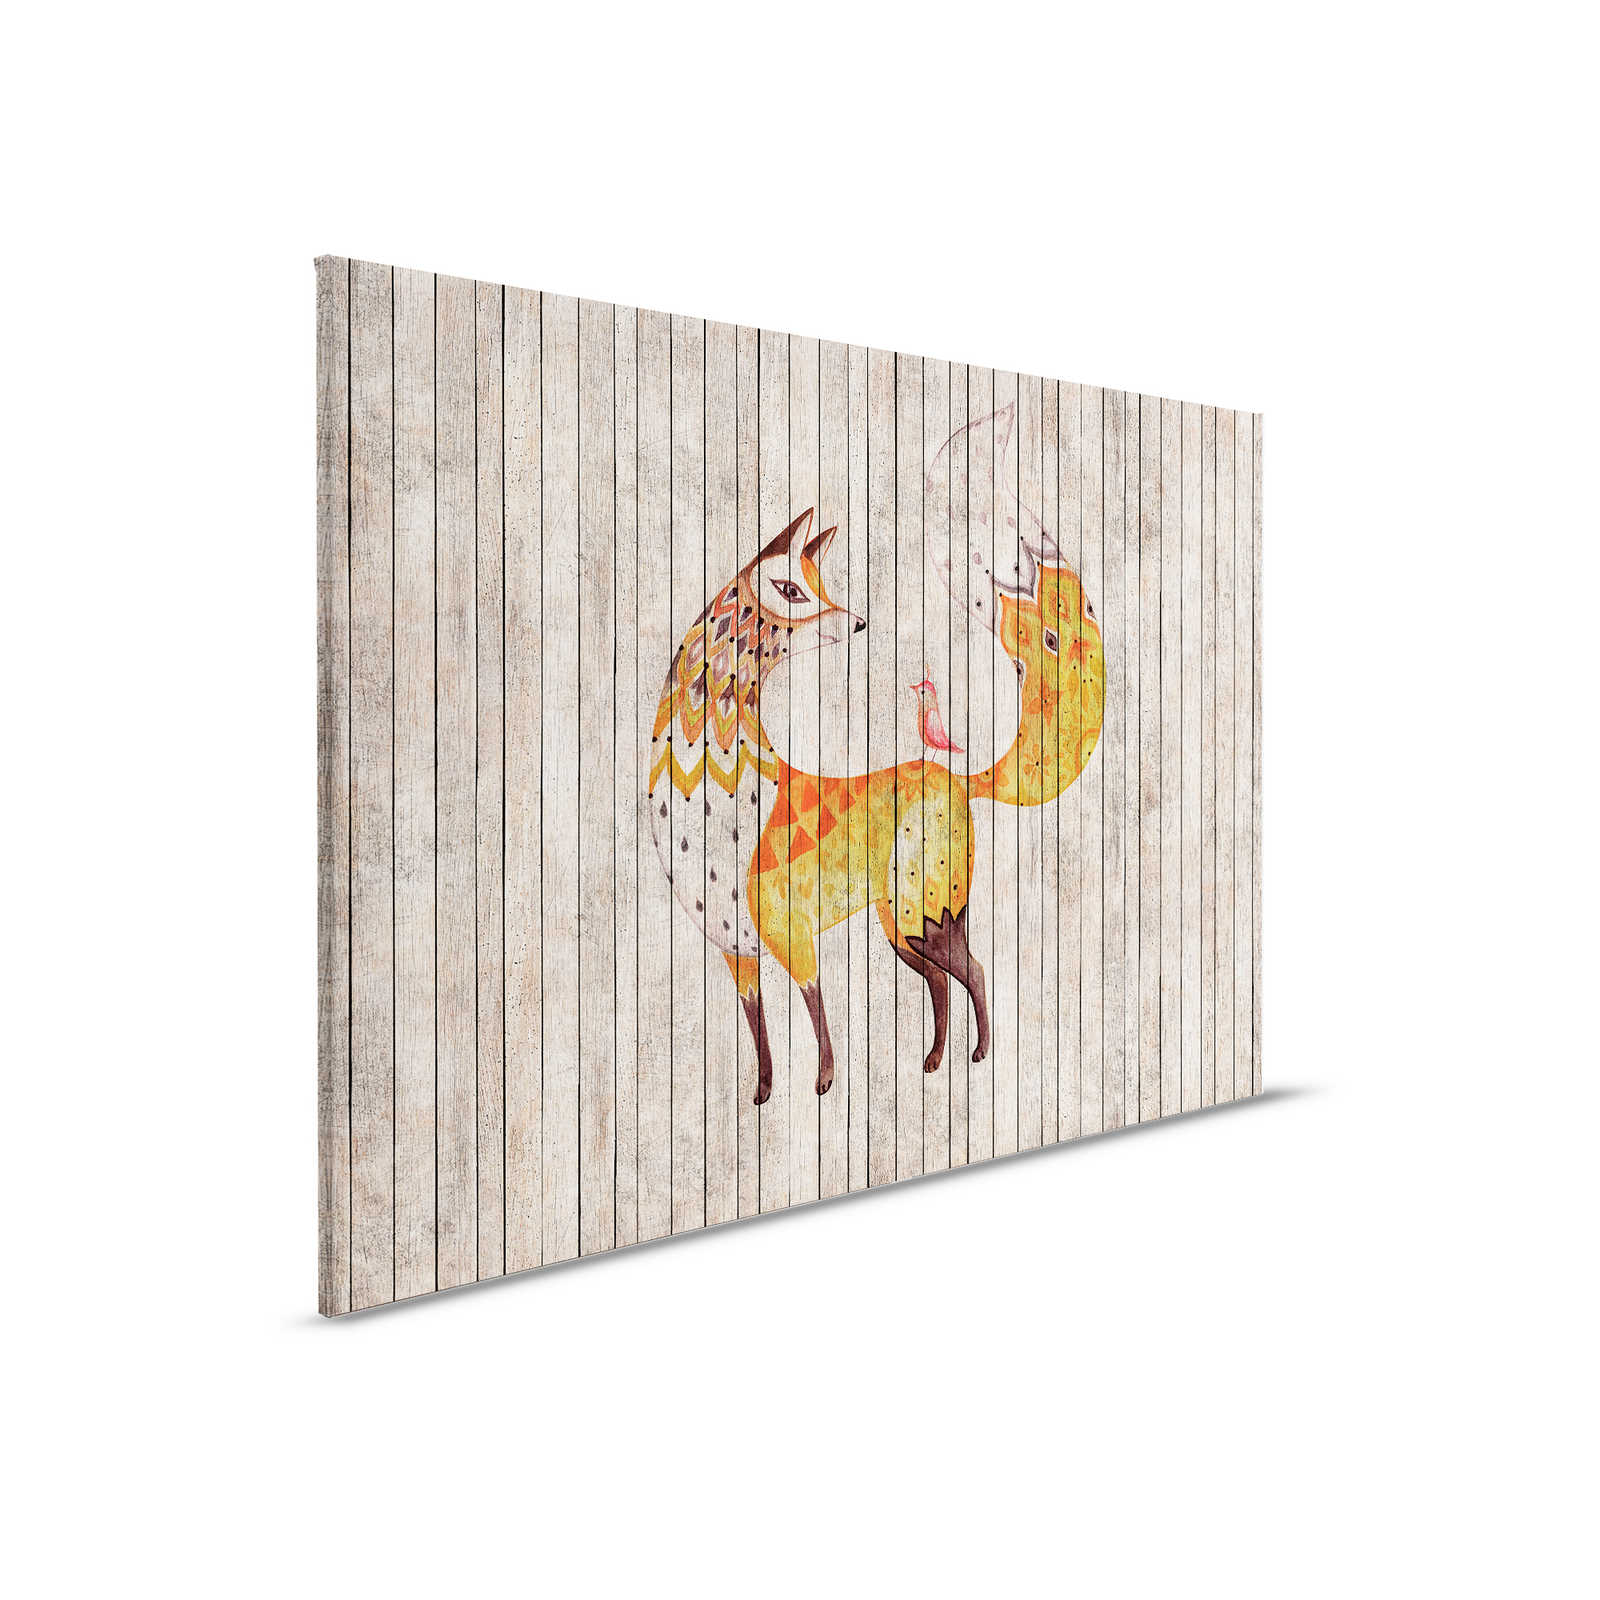 Fiaba 2 - Volpe e uccello su tela effetto legno - 0,90 m x 0,60 m
